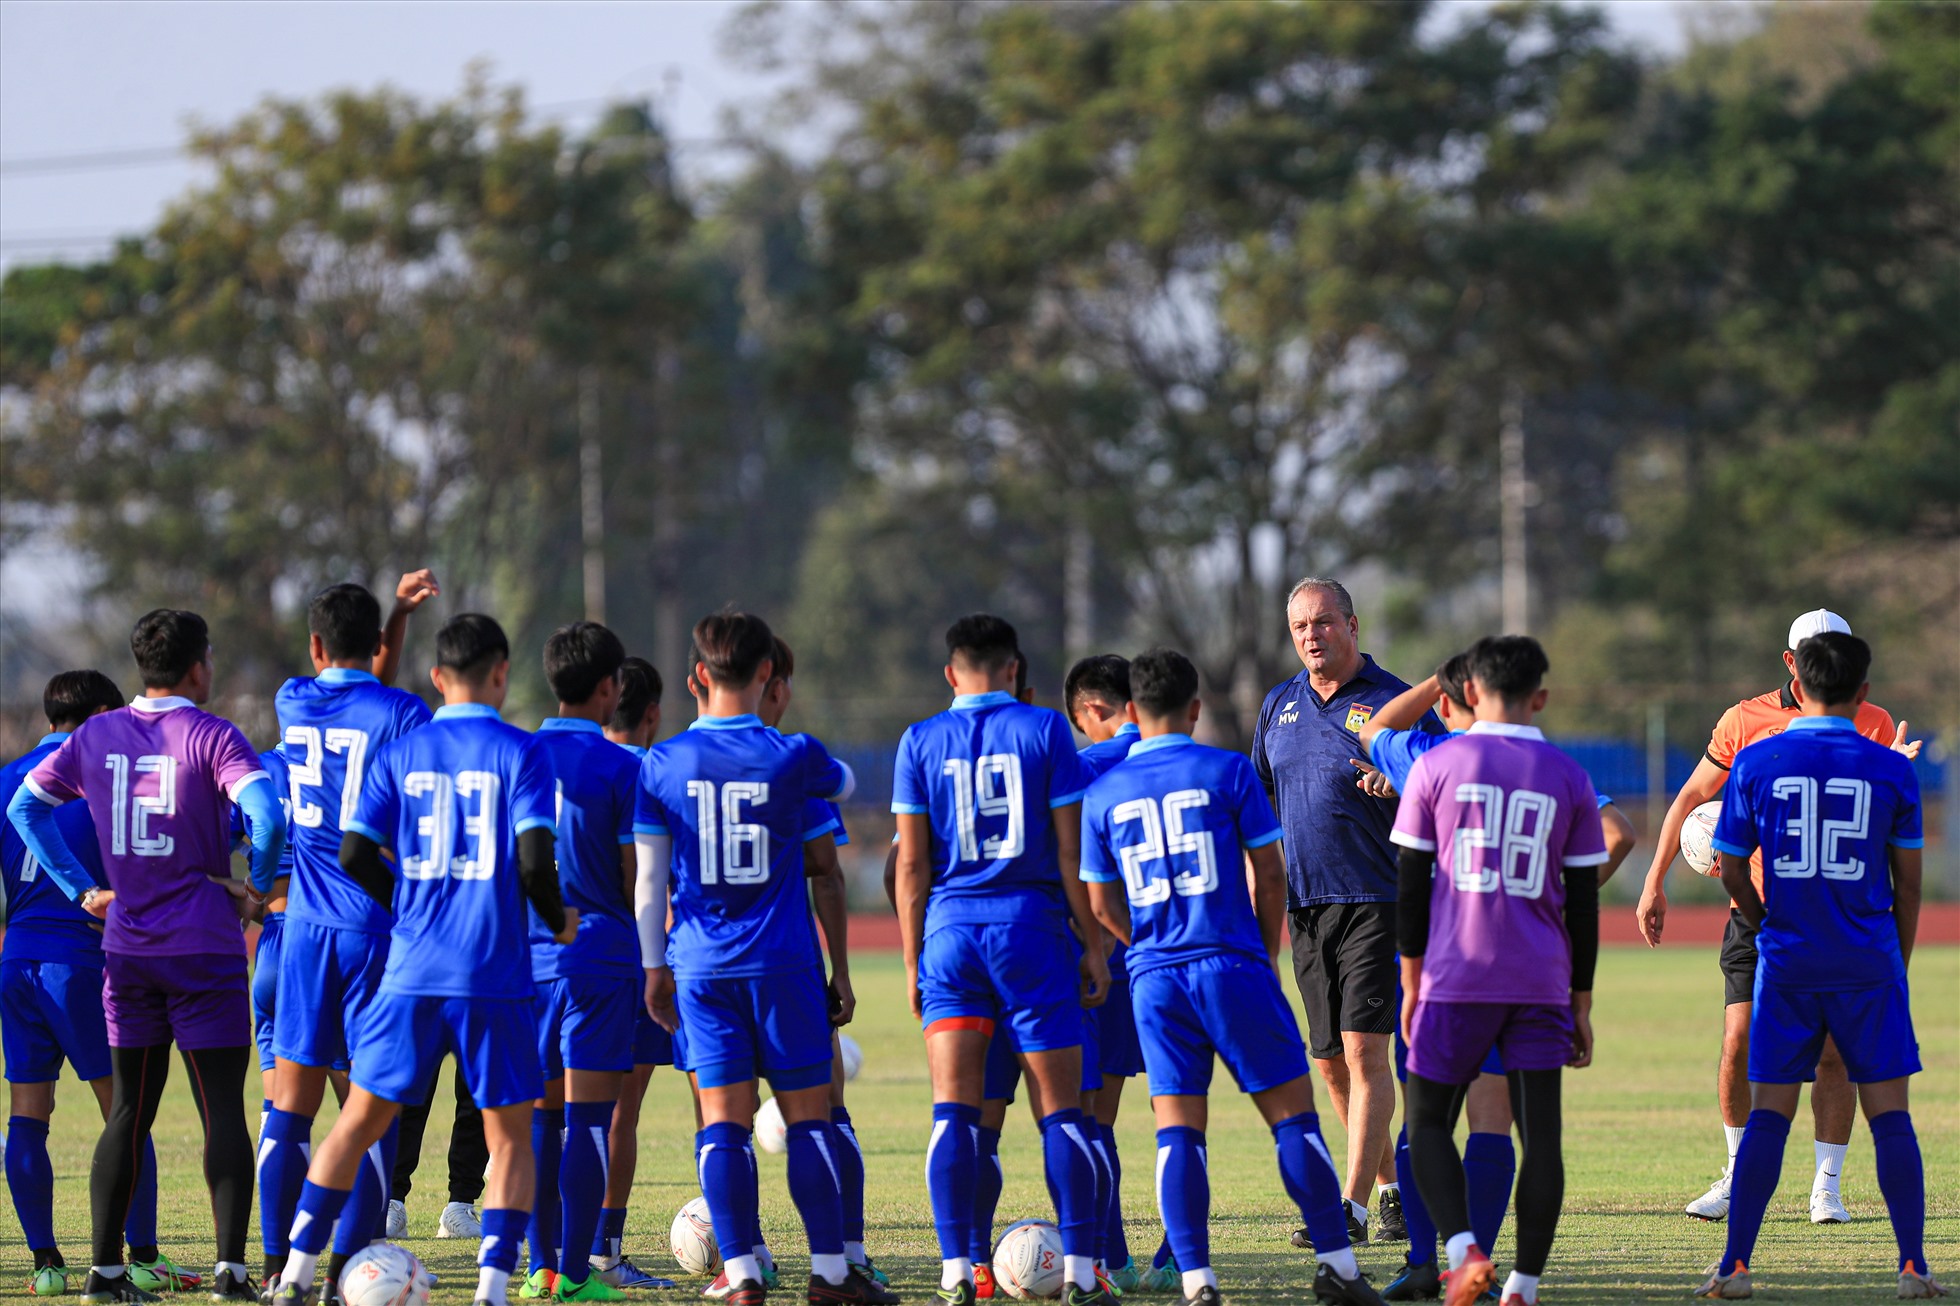 Chiều nay (20.12), đội tuyển Lào đã có buổi tập cuối cùng chuẩn bị cho trận đấu gặp đội tuyển Việt Nam tại AFF Cup 2022. Trận đấu diễn ra lúc 19h30 trên sân vận động mới quốc gia Lào.